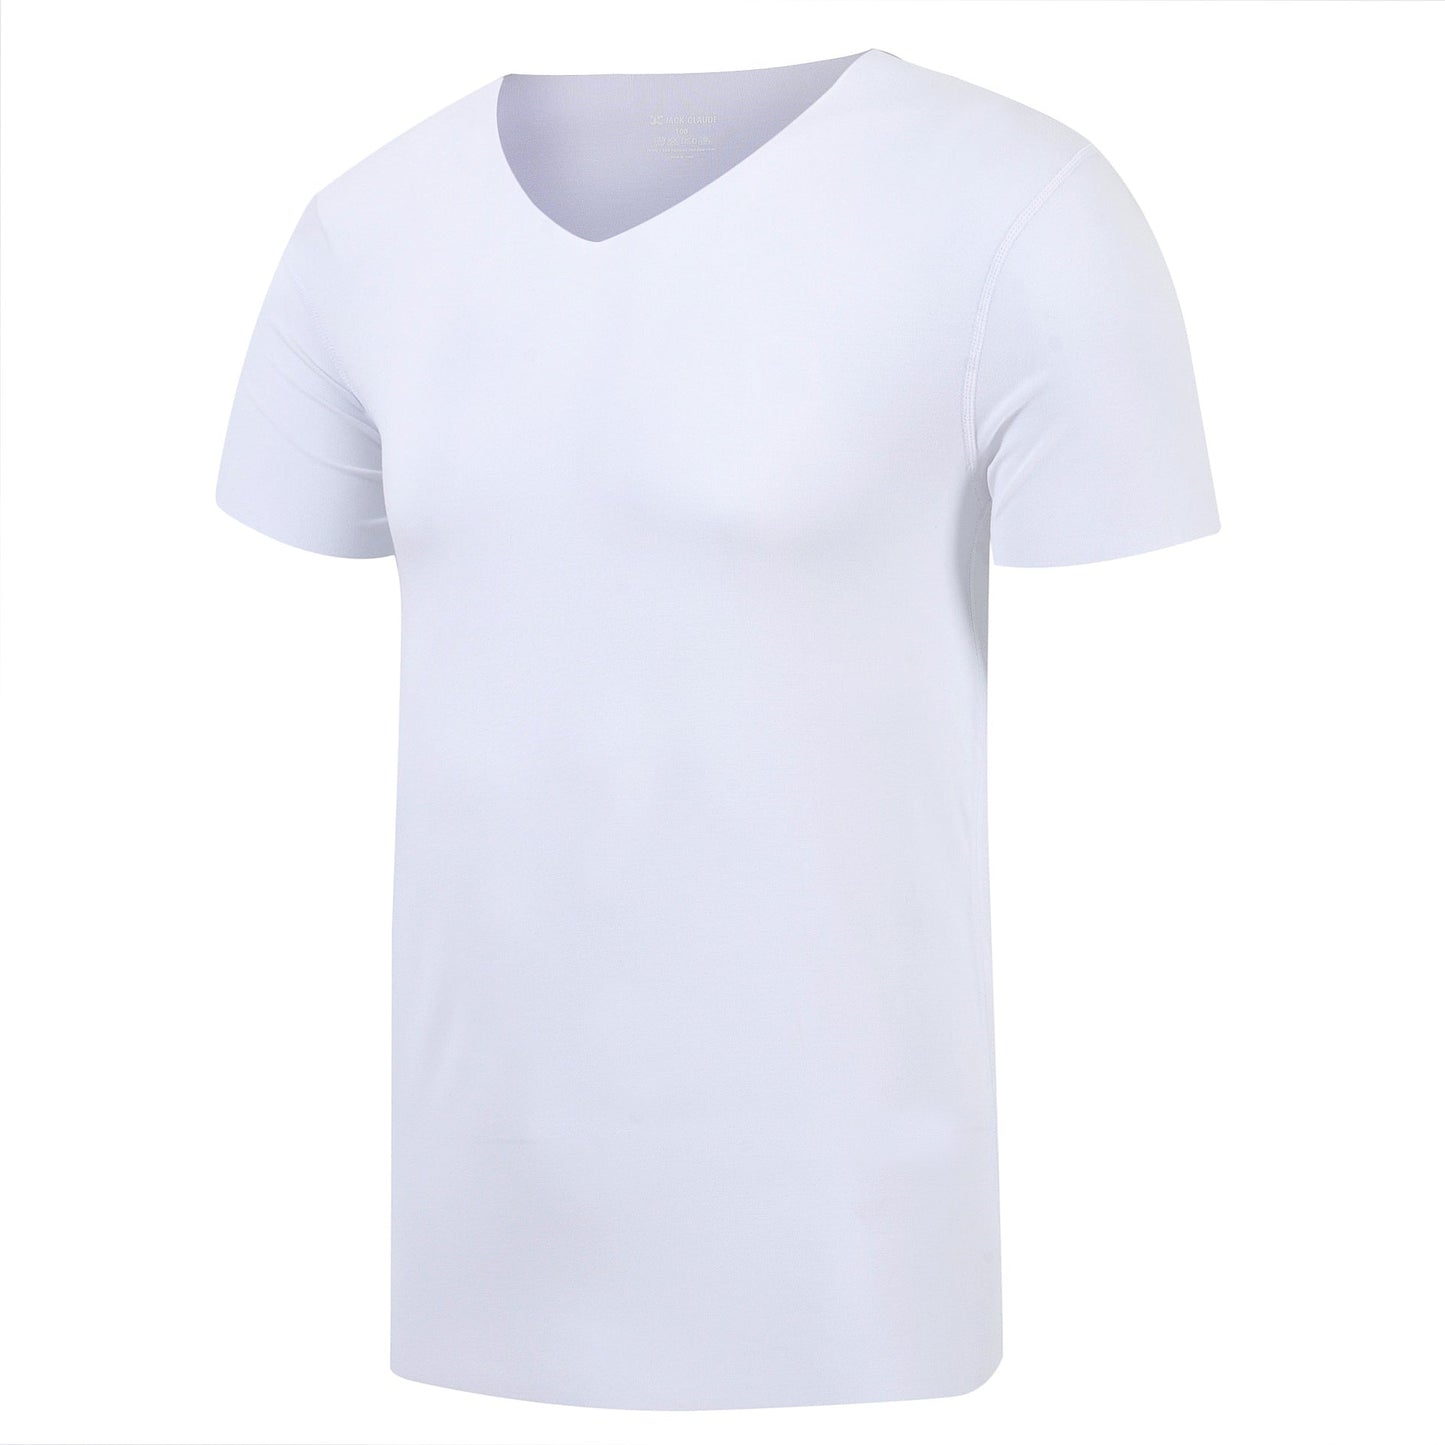 Half-Sleeved Solid Color Plain T-Shirt GlamzLife